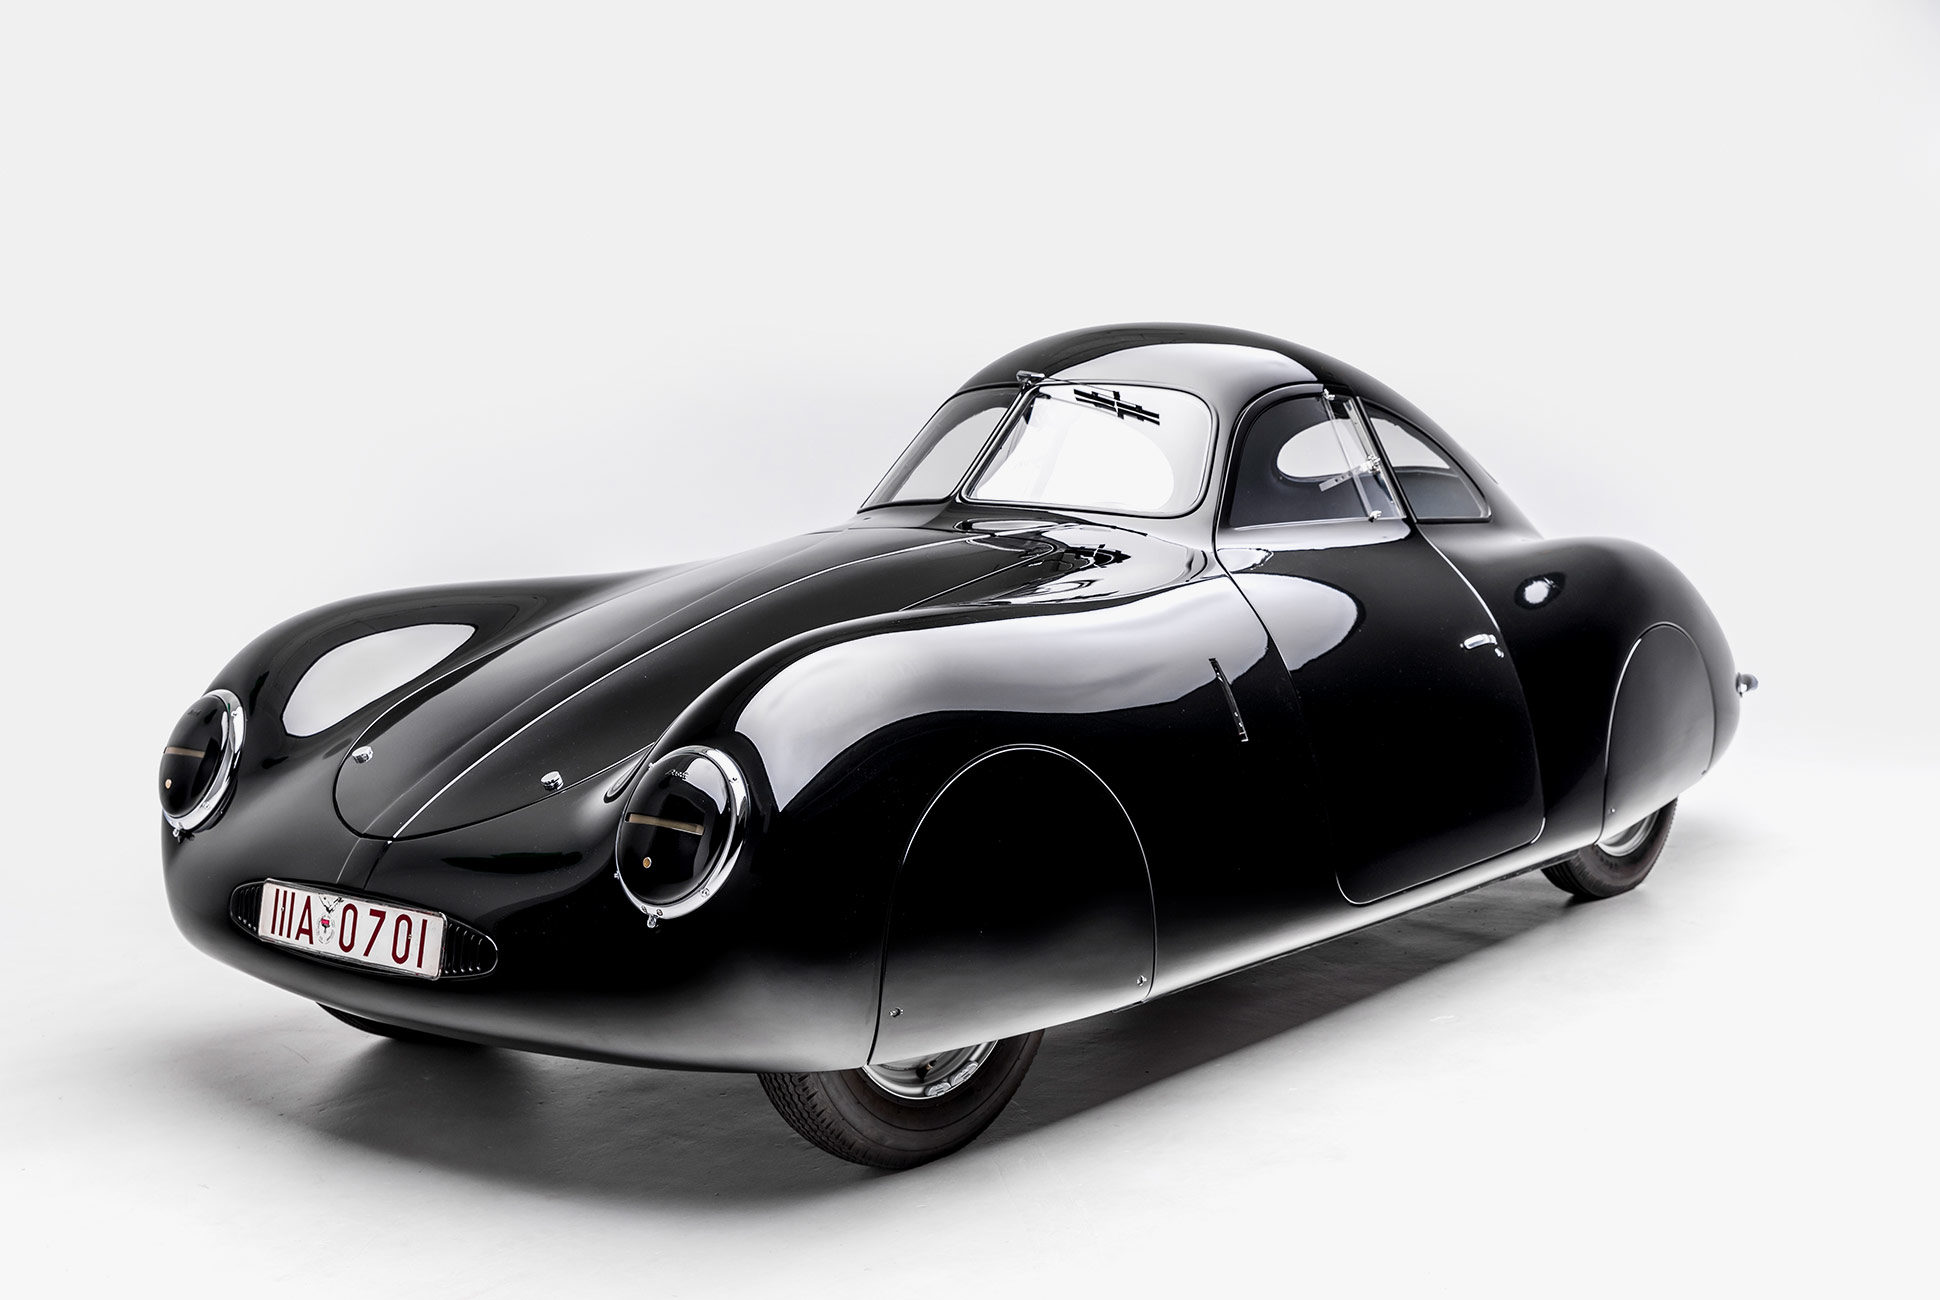 Porsche-Exhibit-Petersen-Museum-1-1940x1300.jpg